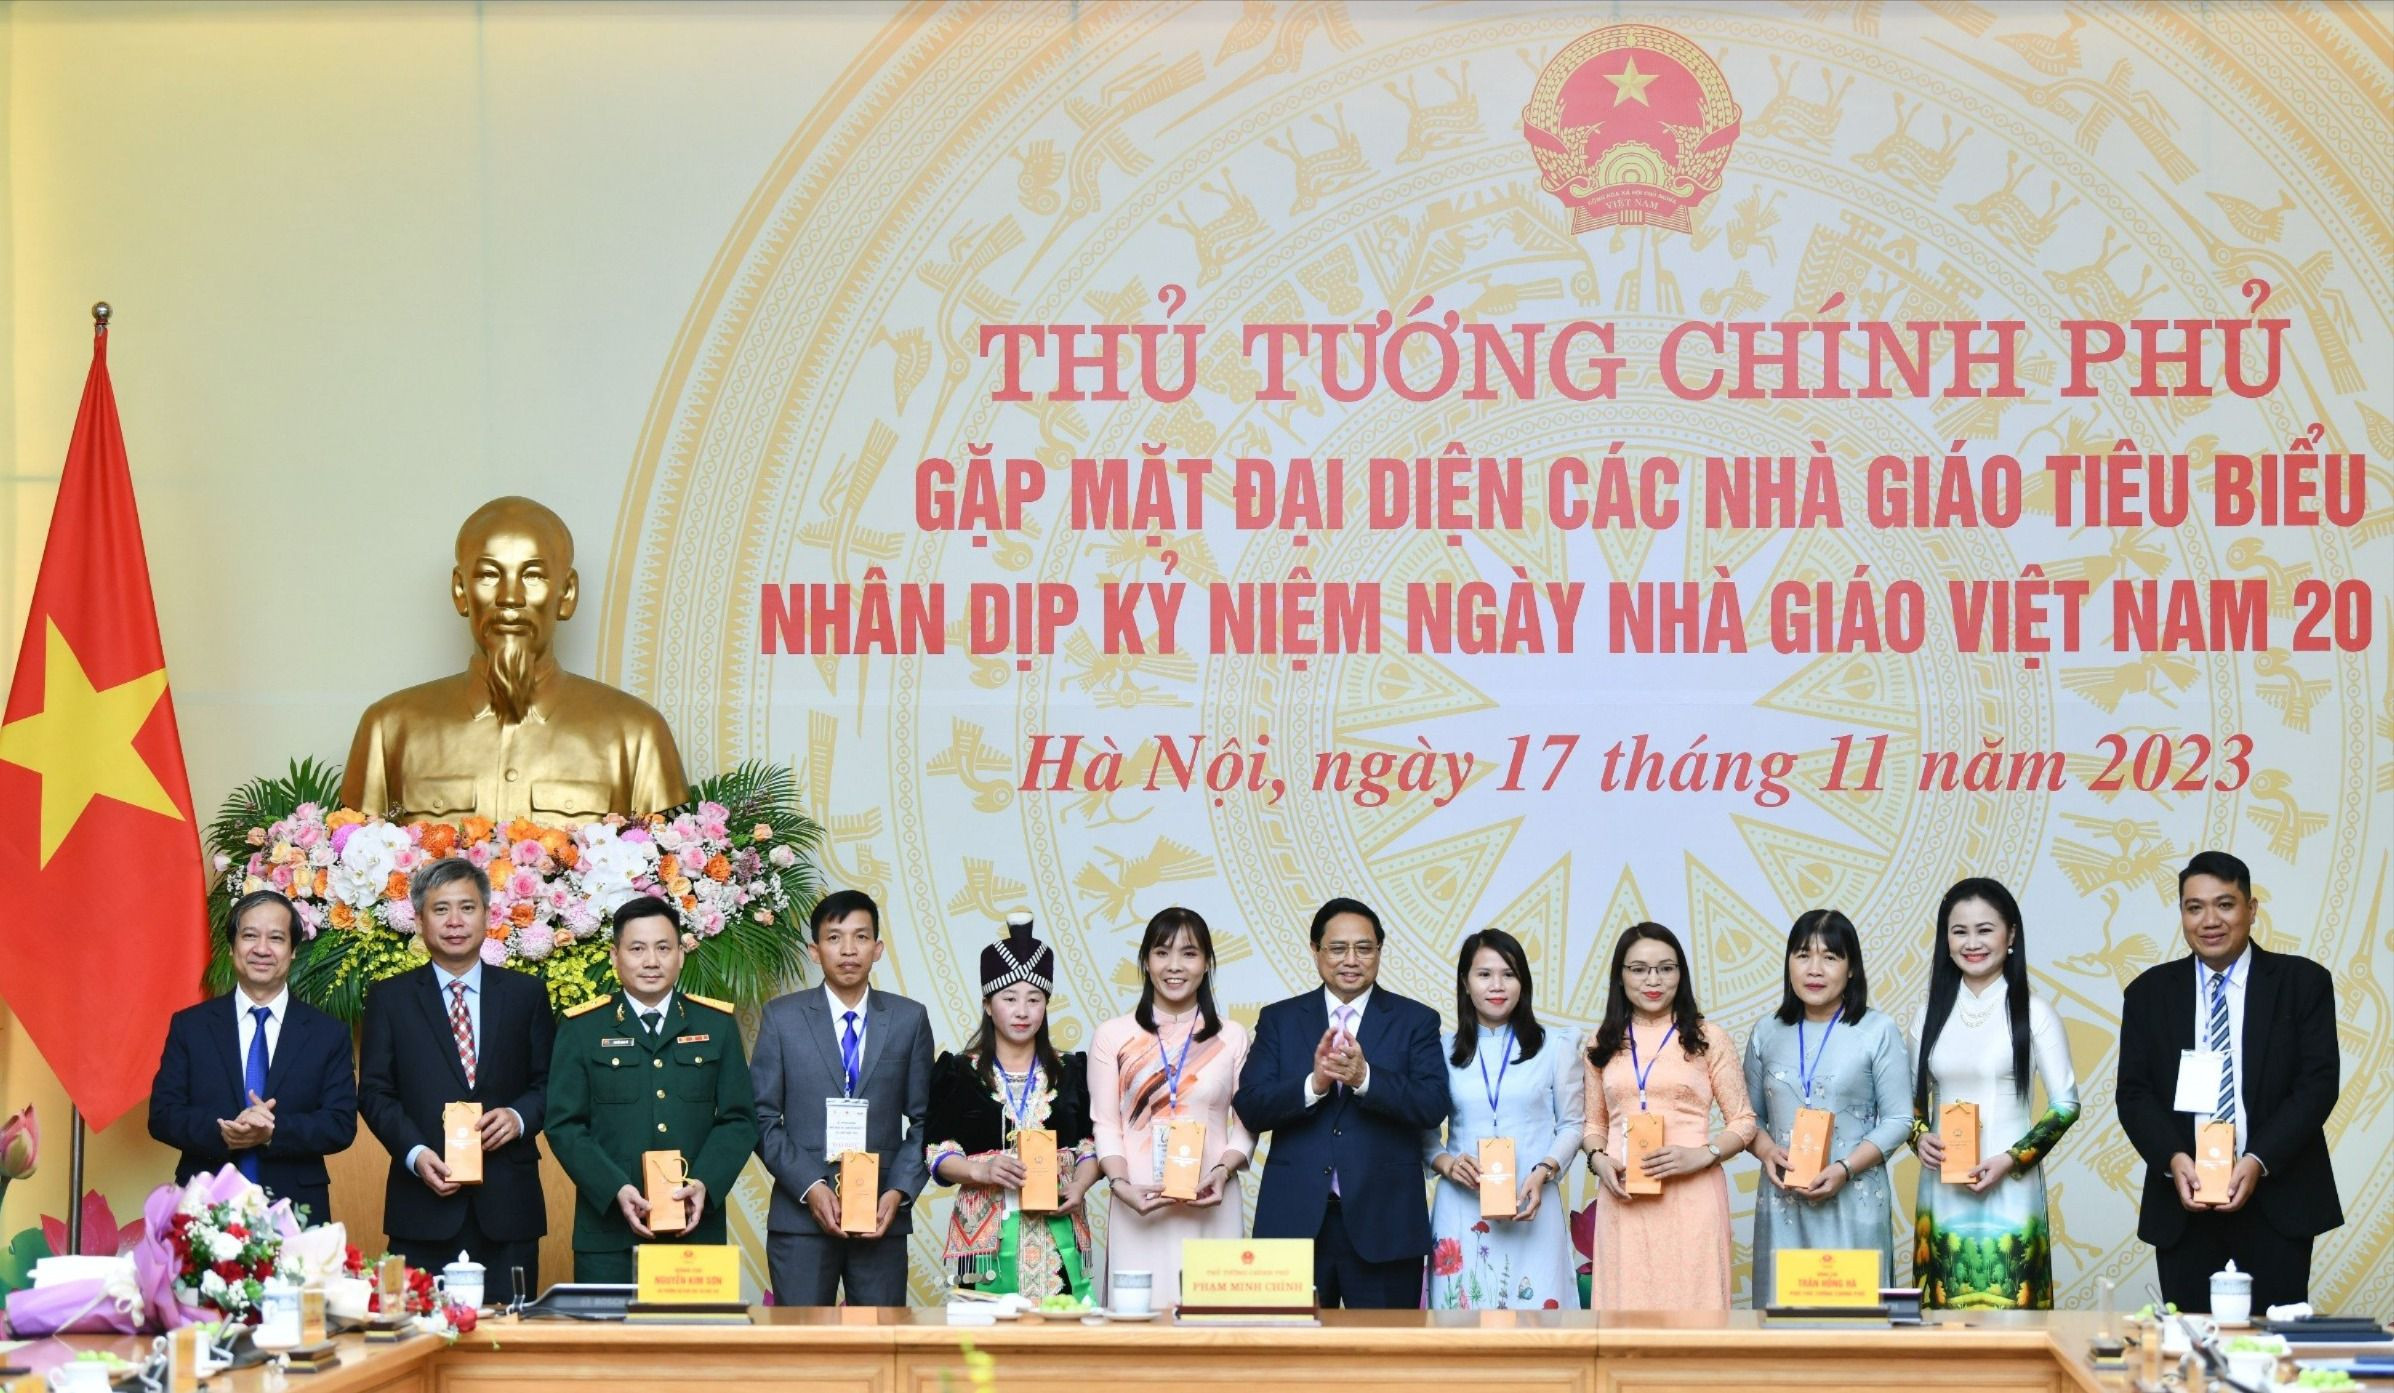 bna_Thủ tướng Chính phủ tặng quà cho các nhà giáo tiêu biểu nhân dịp Kỷ niệm Ngày Nhà giáo Việt Nam 20 - 11.jpg